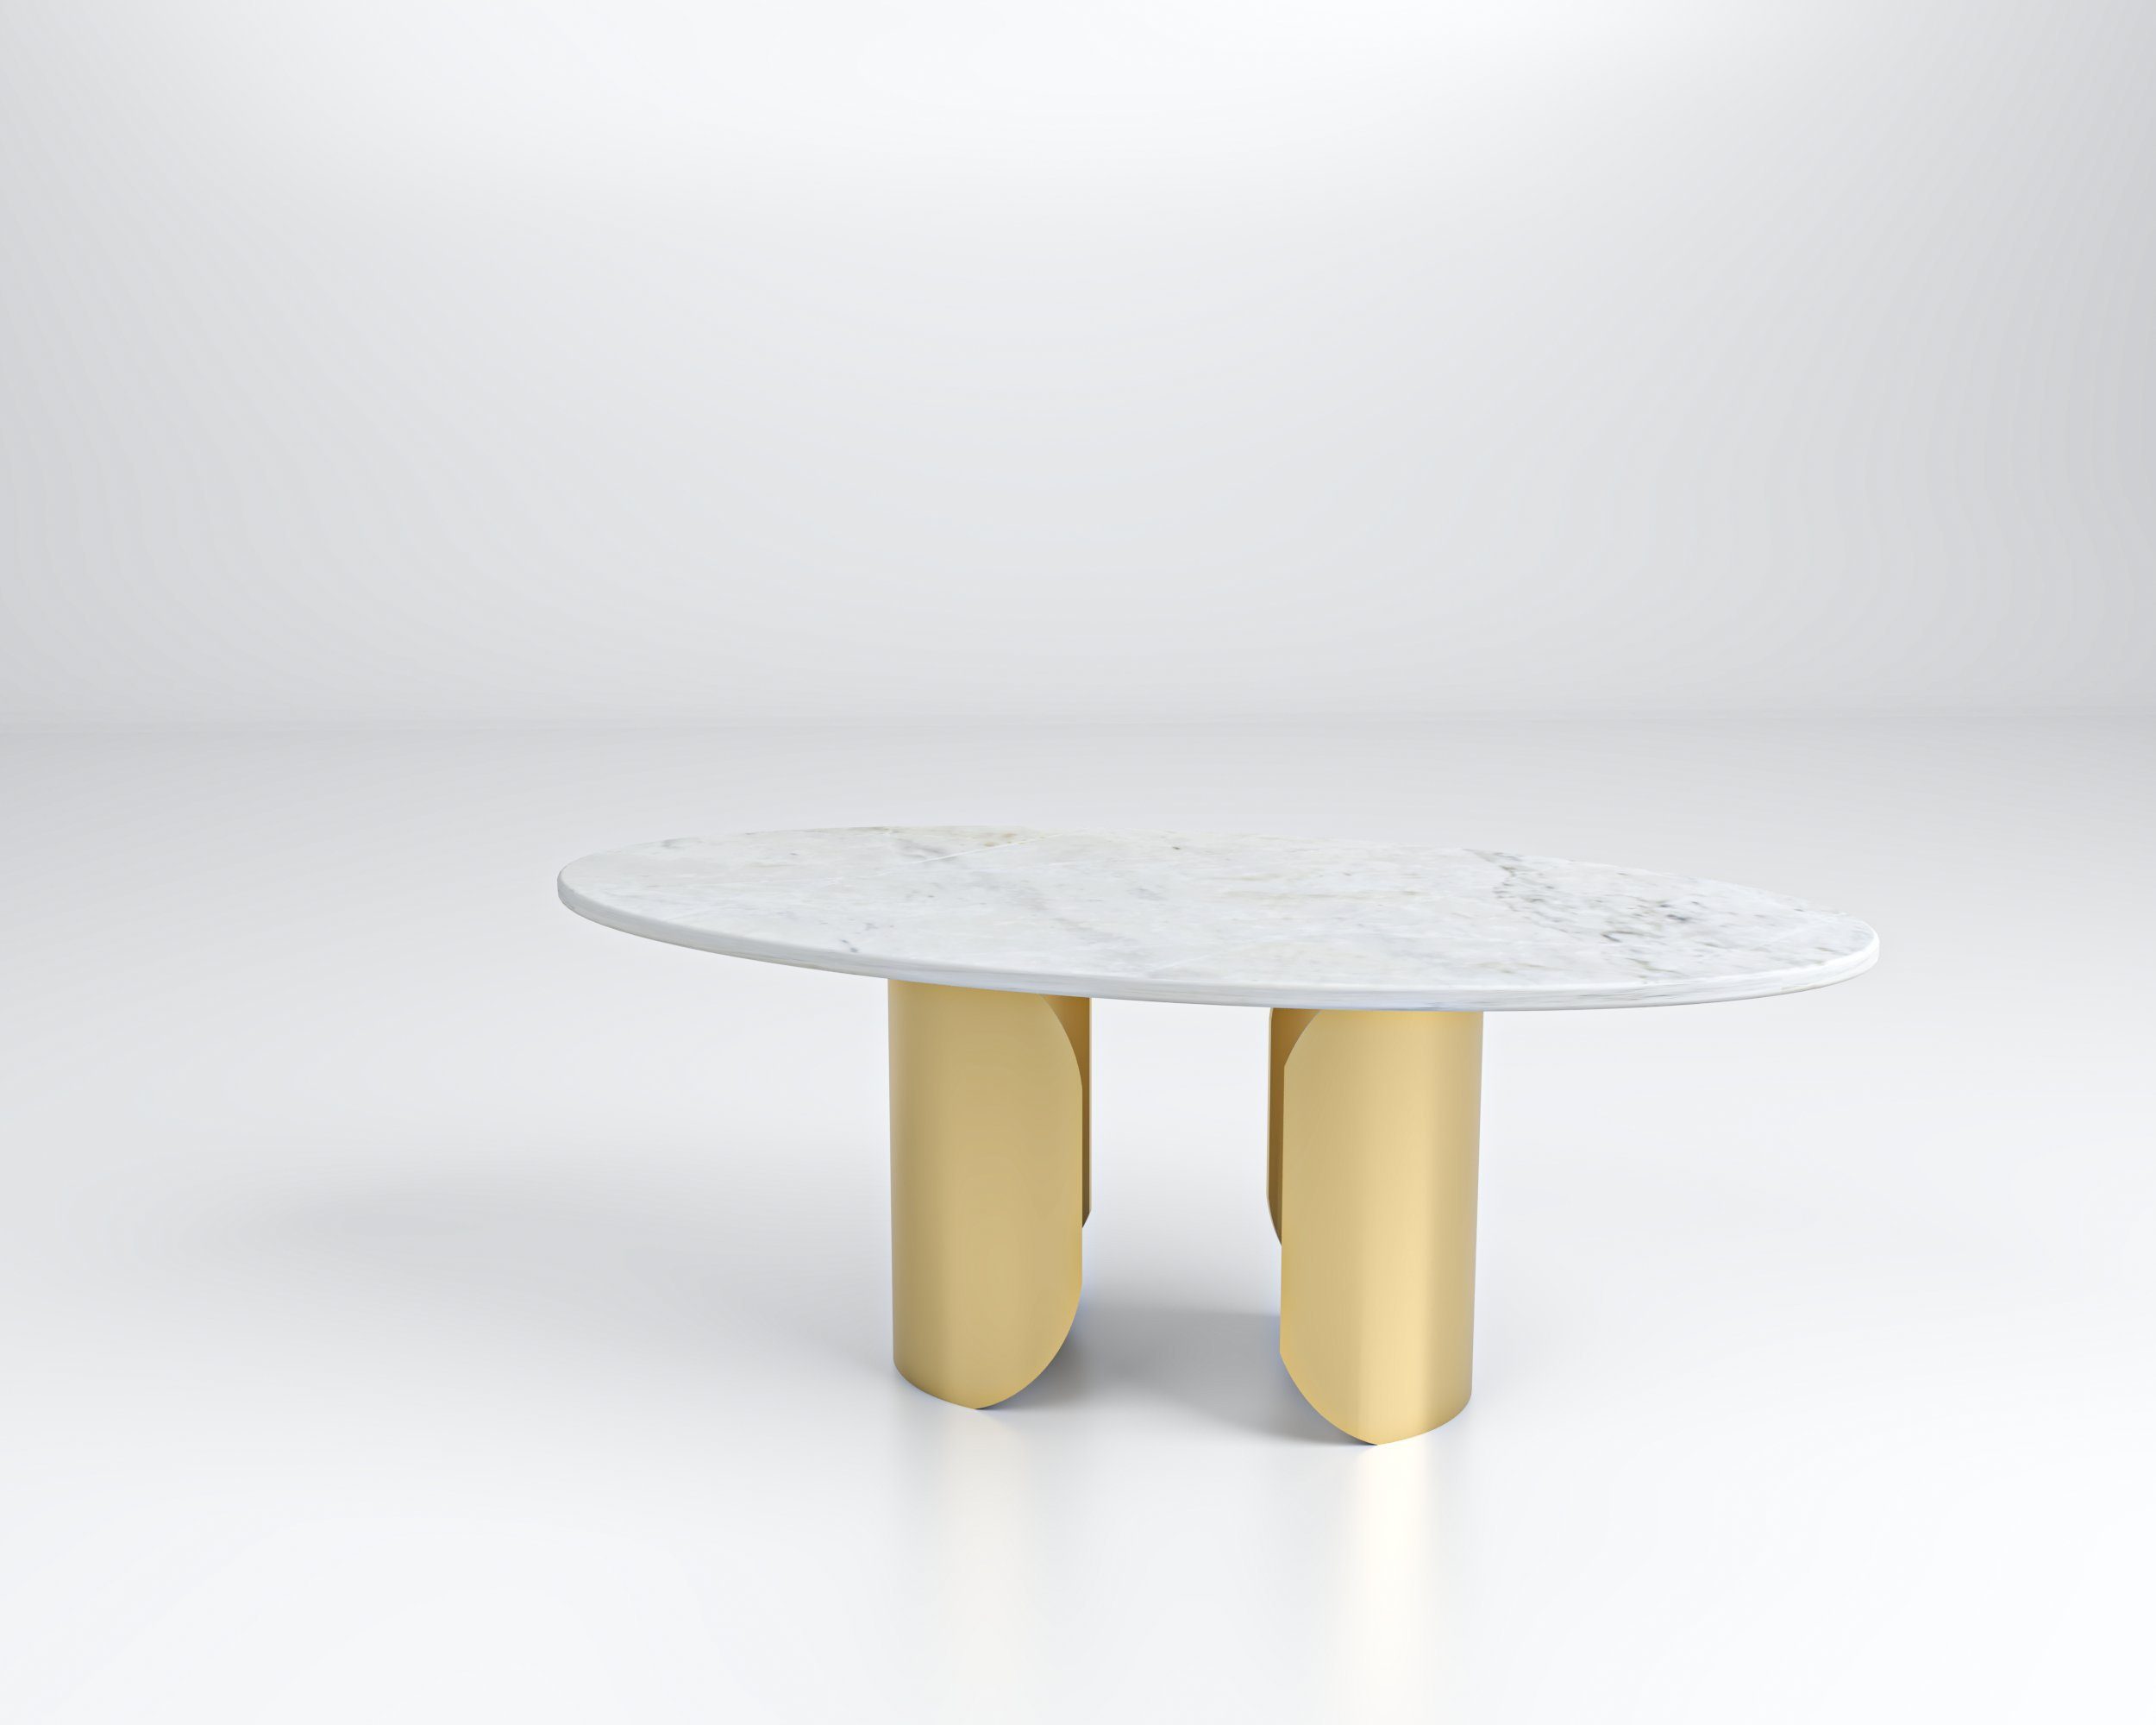 D'arte Stone Couchtisch NICOLO ovaler Marmor-Couchtisch weiße Platte mit goldenem Gestell